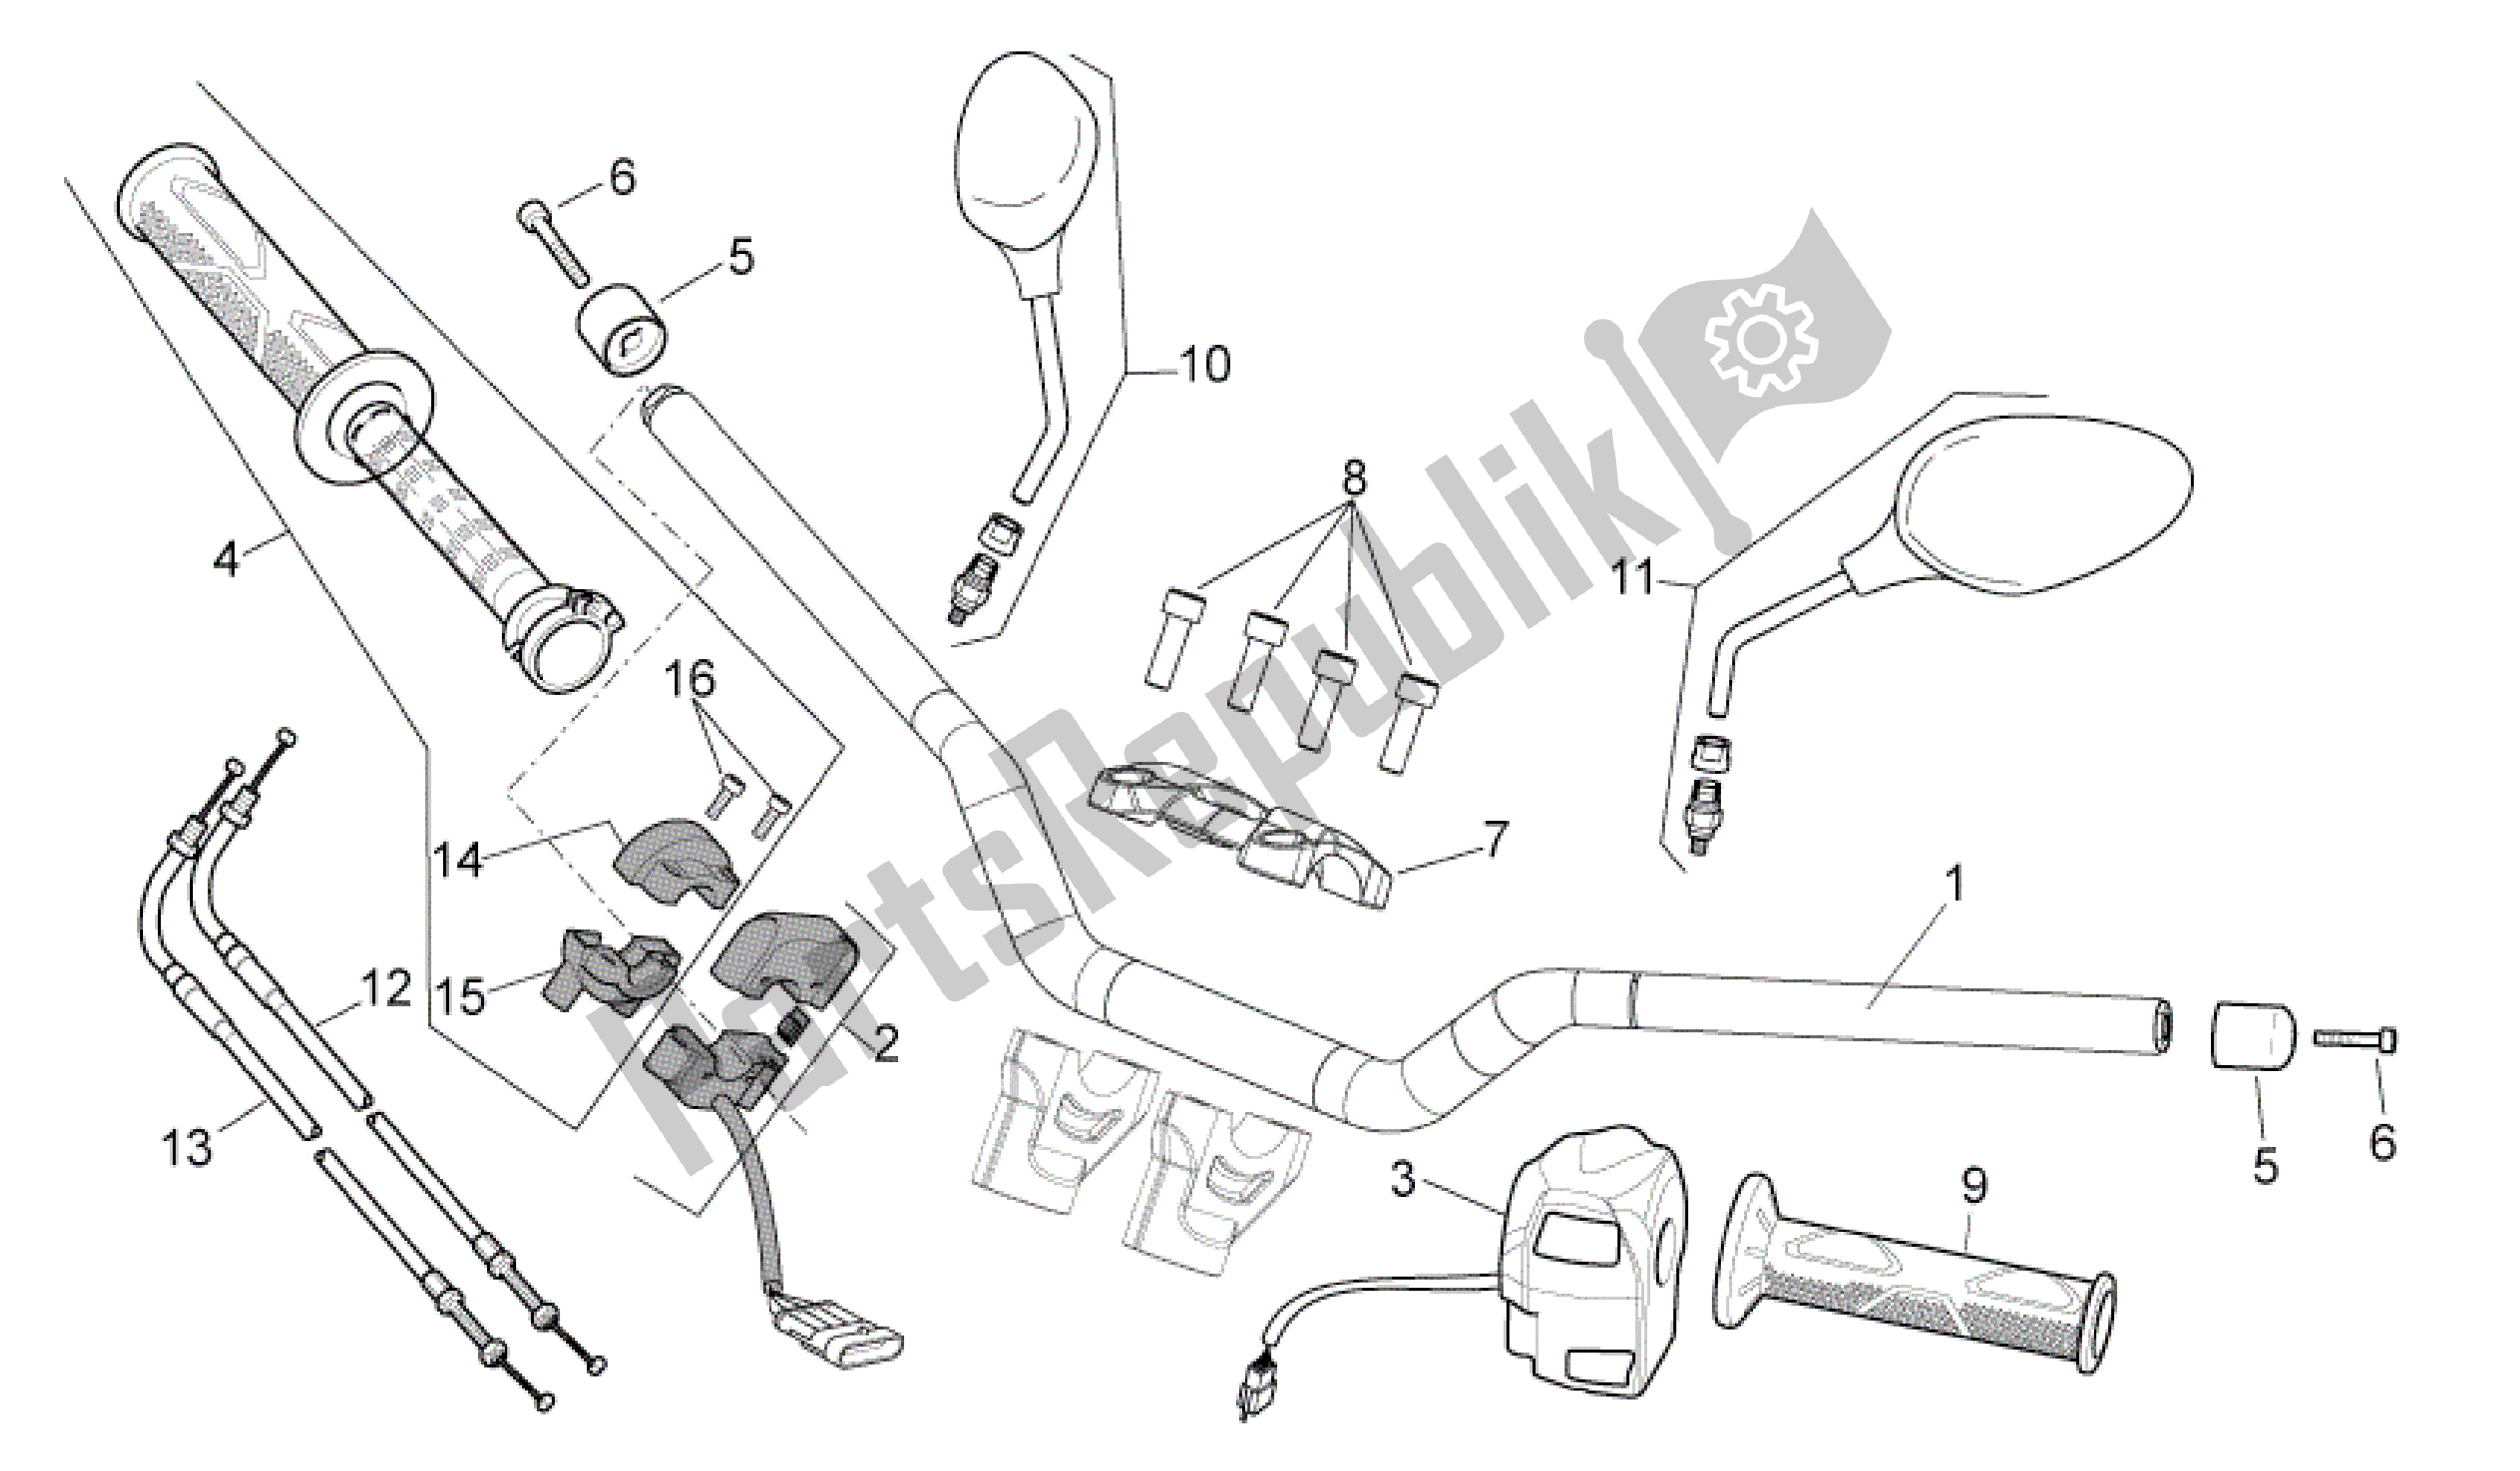 Tutte le parti per il Manubrio - Comandi del Aprilia Shiver 750 2011 - 2013